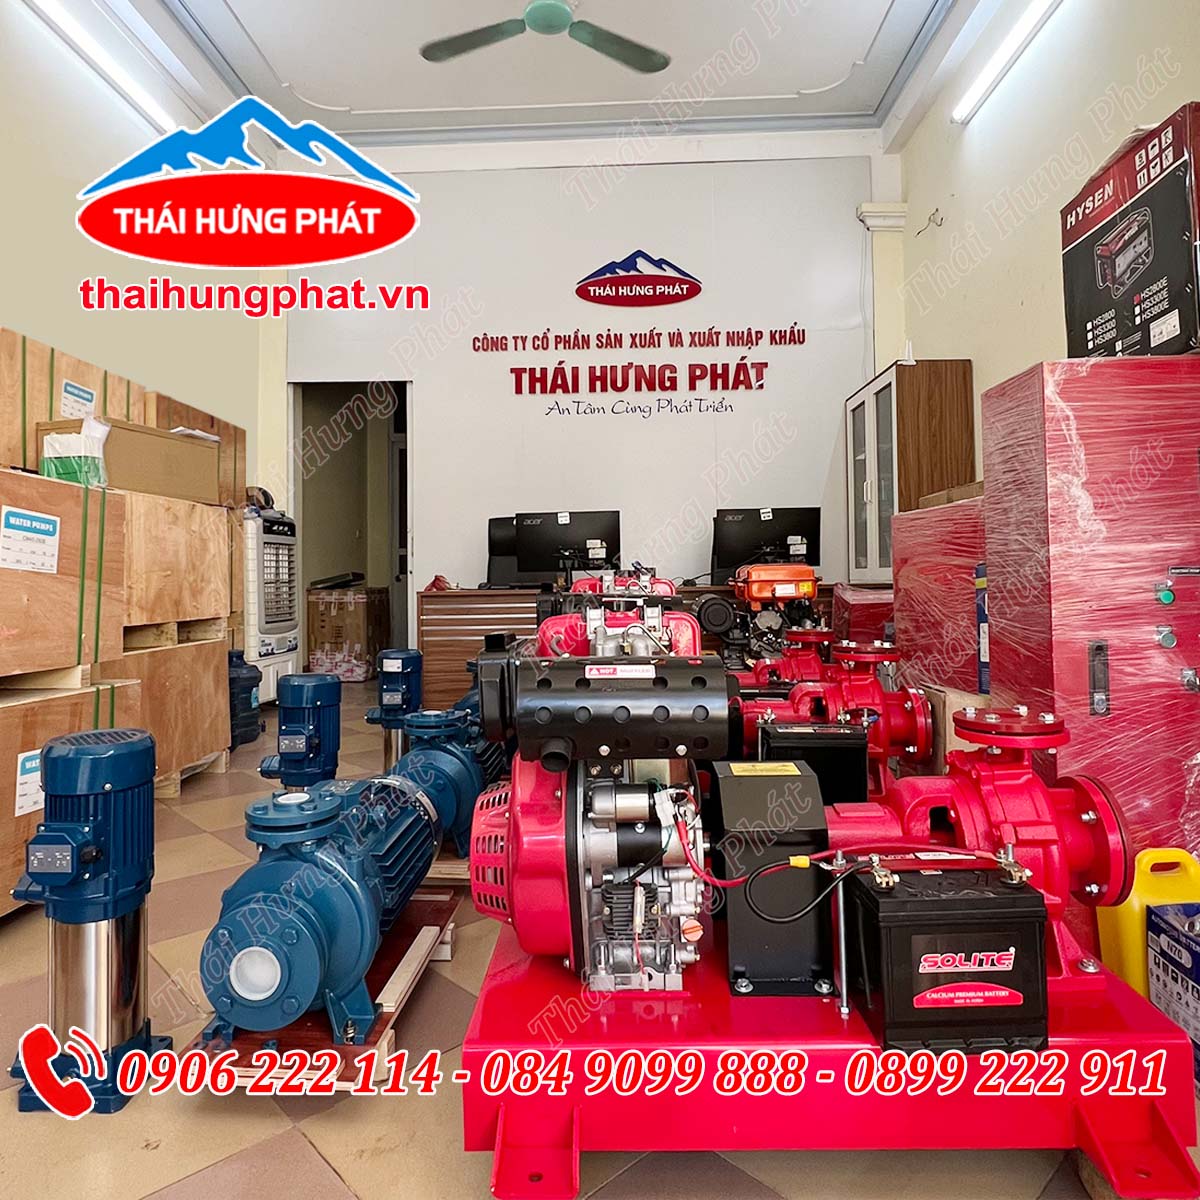 Mua máy bơm phòng cháy chữa cháy chất lượng, giá rẻ tại tỉnh Bình Thuận